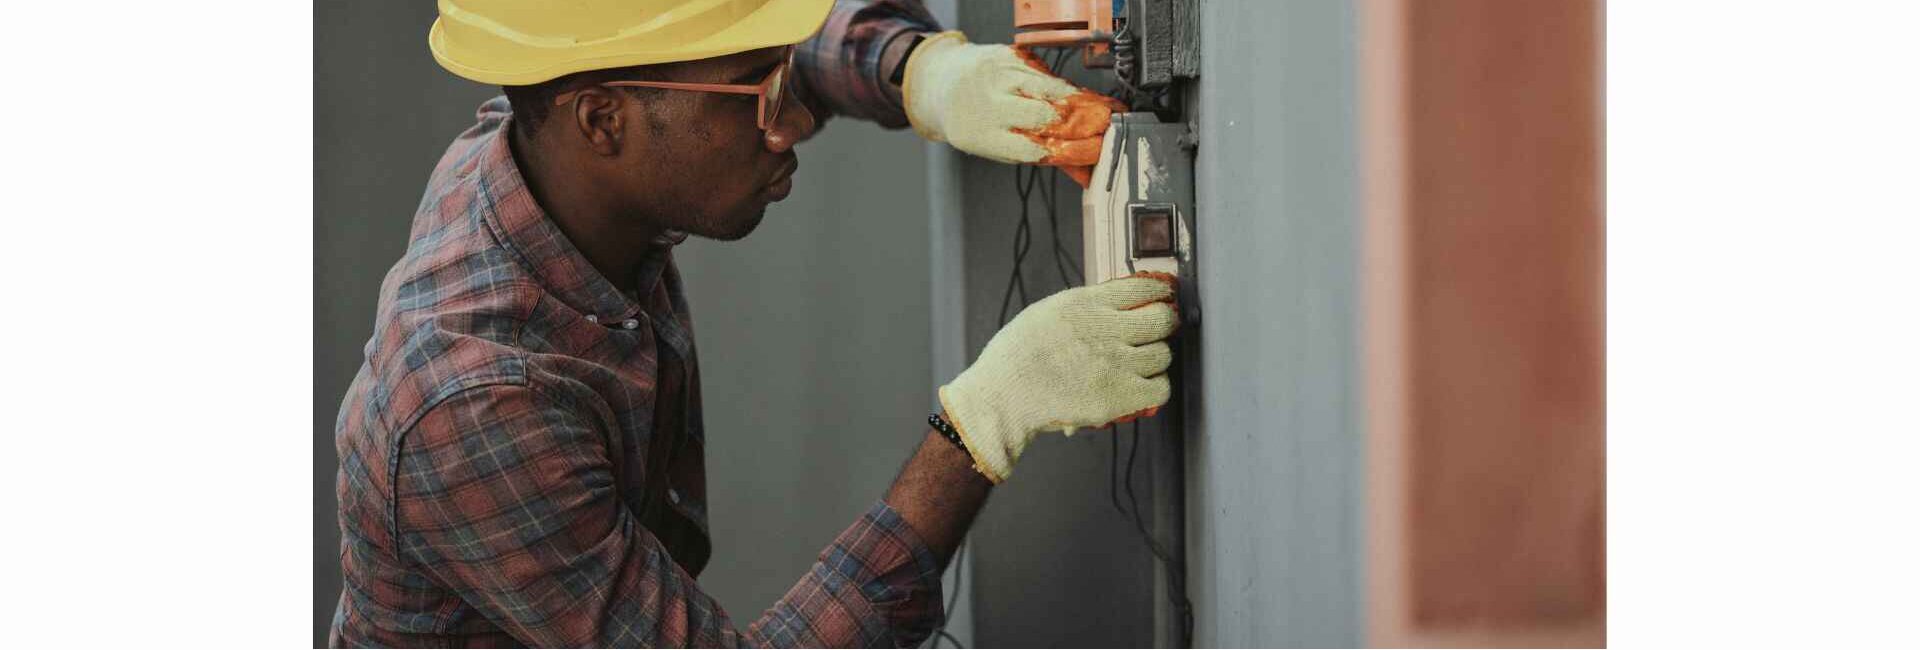 Sachin Electrician- electrician services in Noida